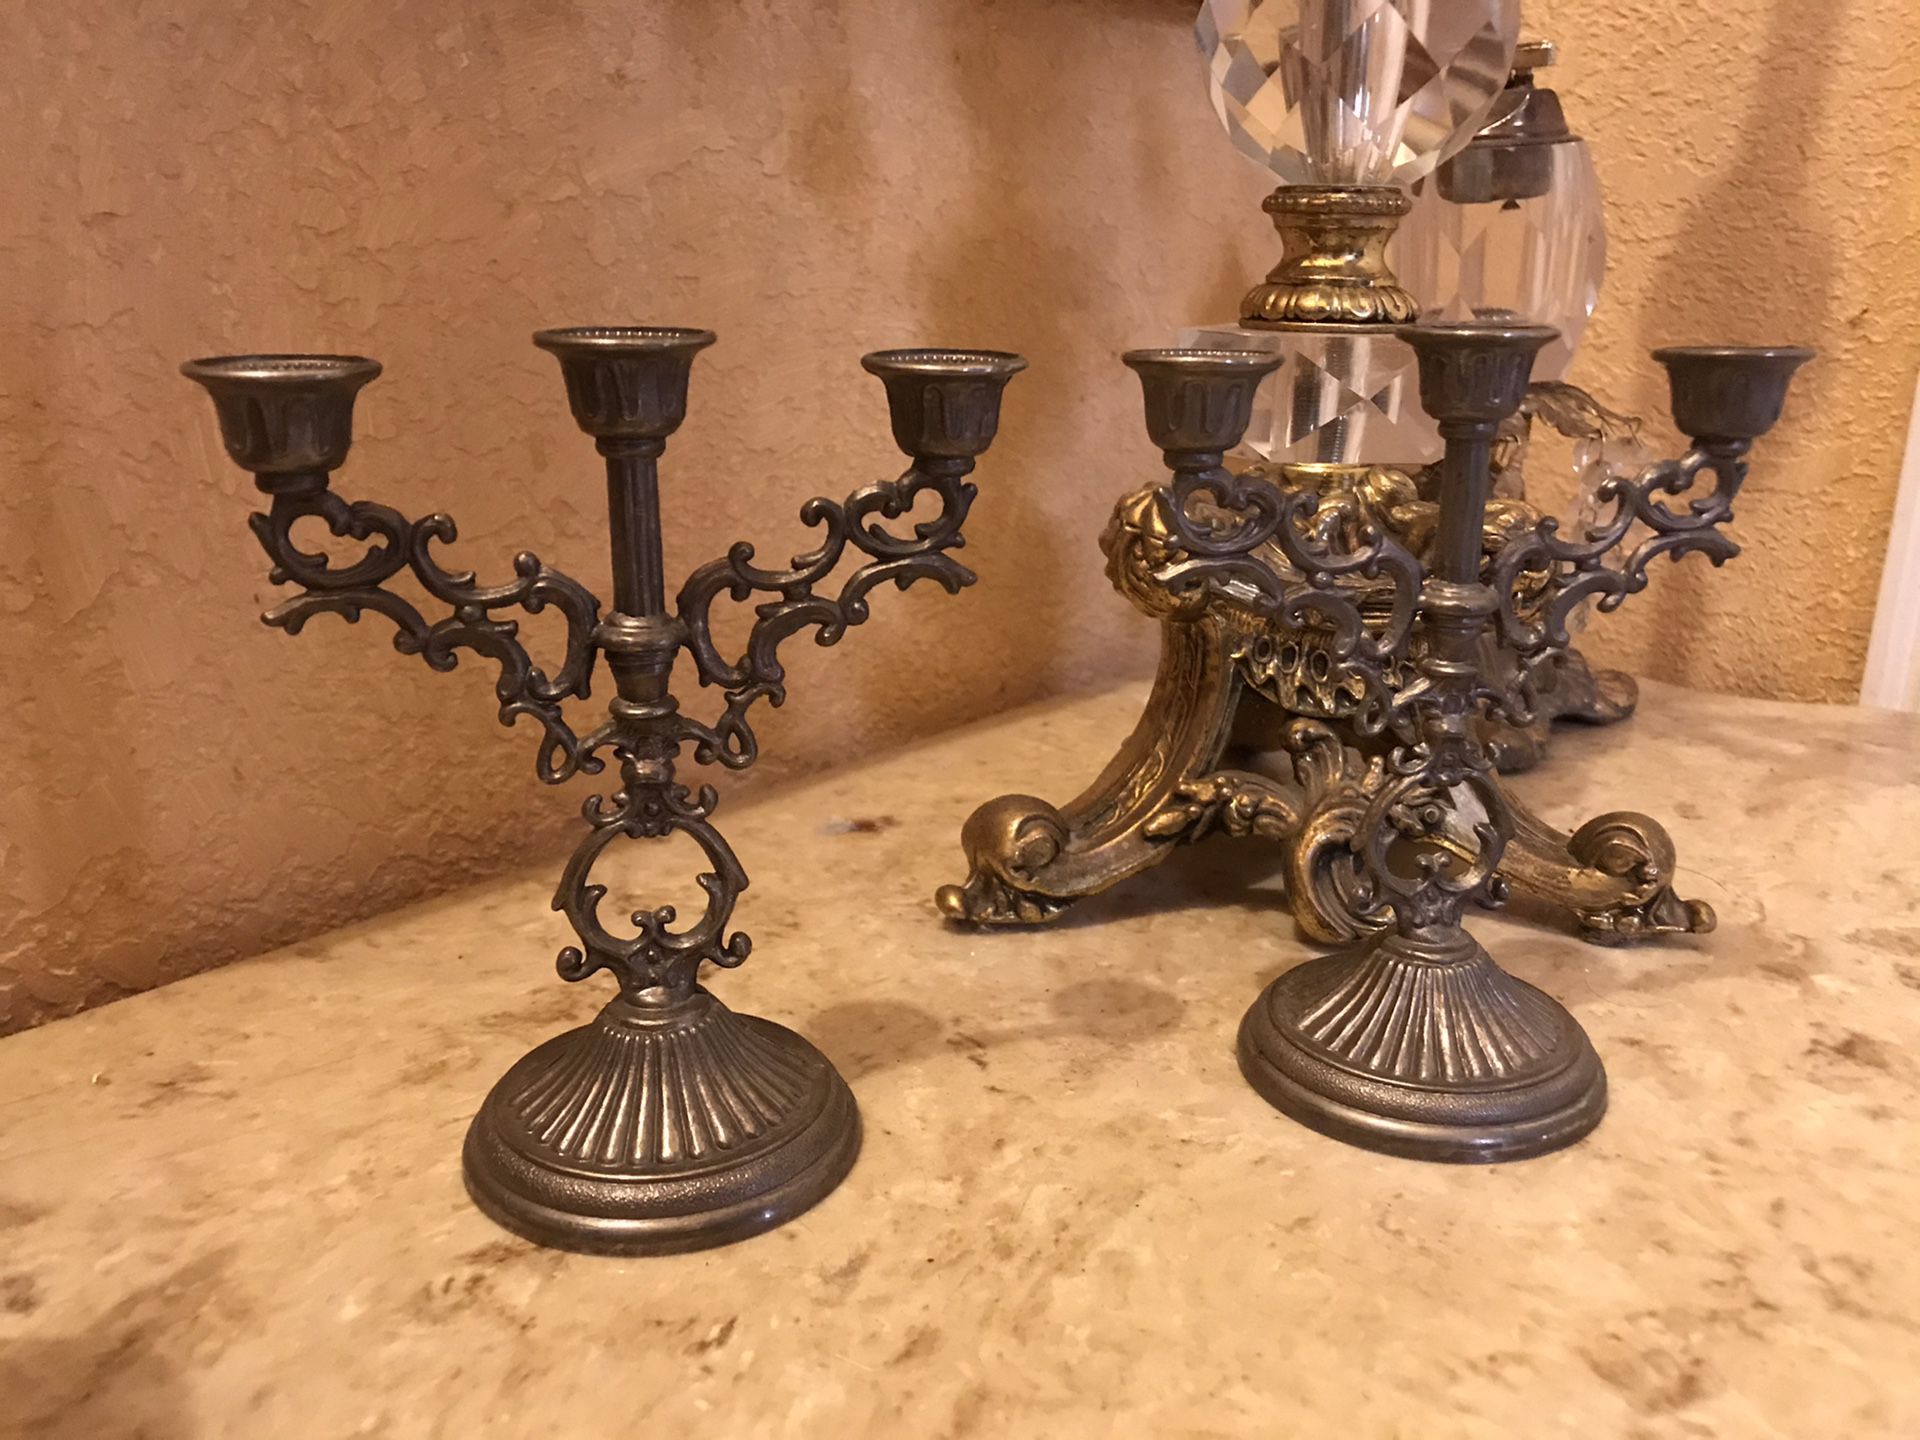 Small vintage Victorian candelabras